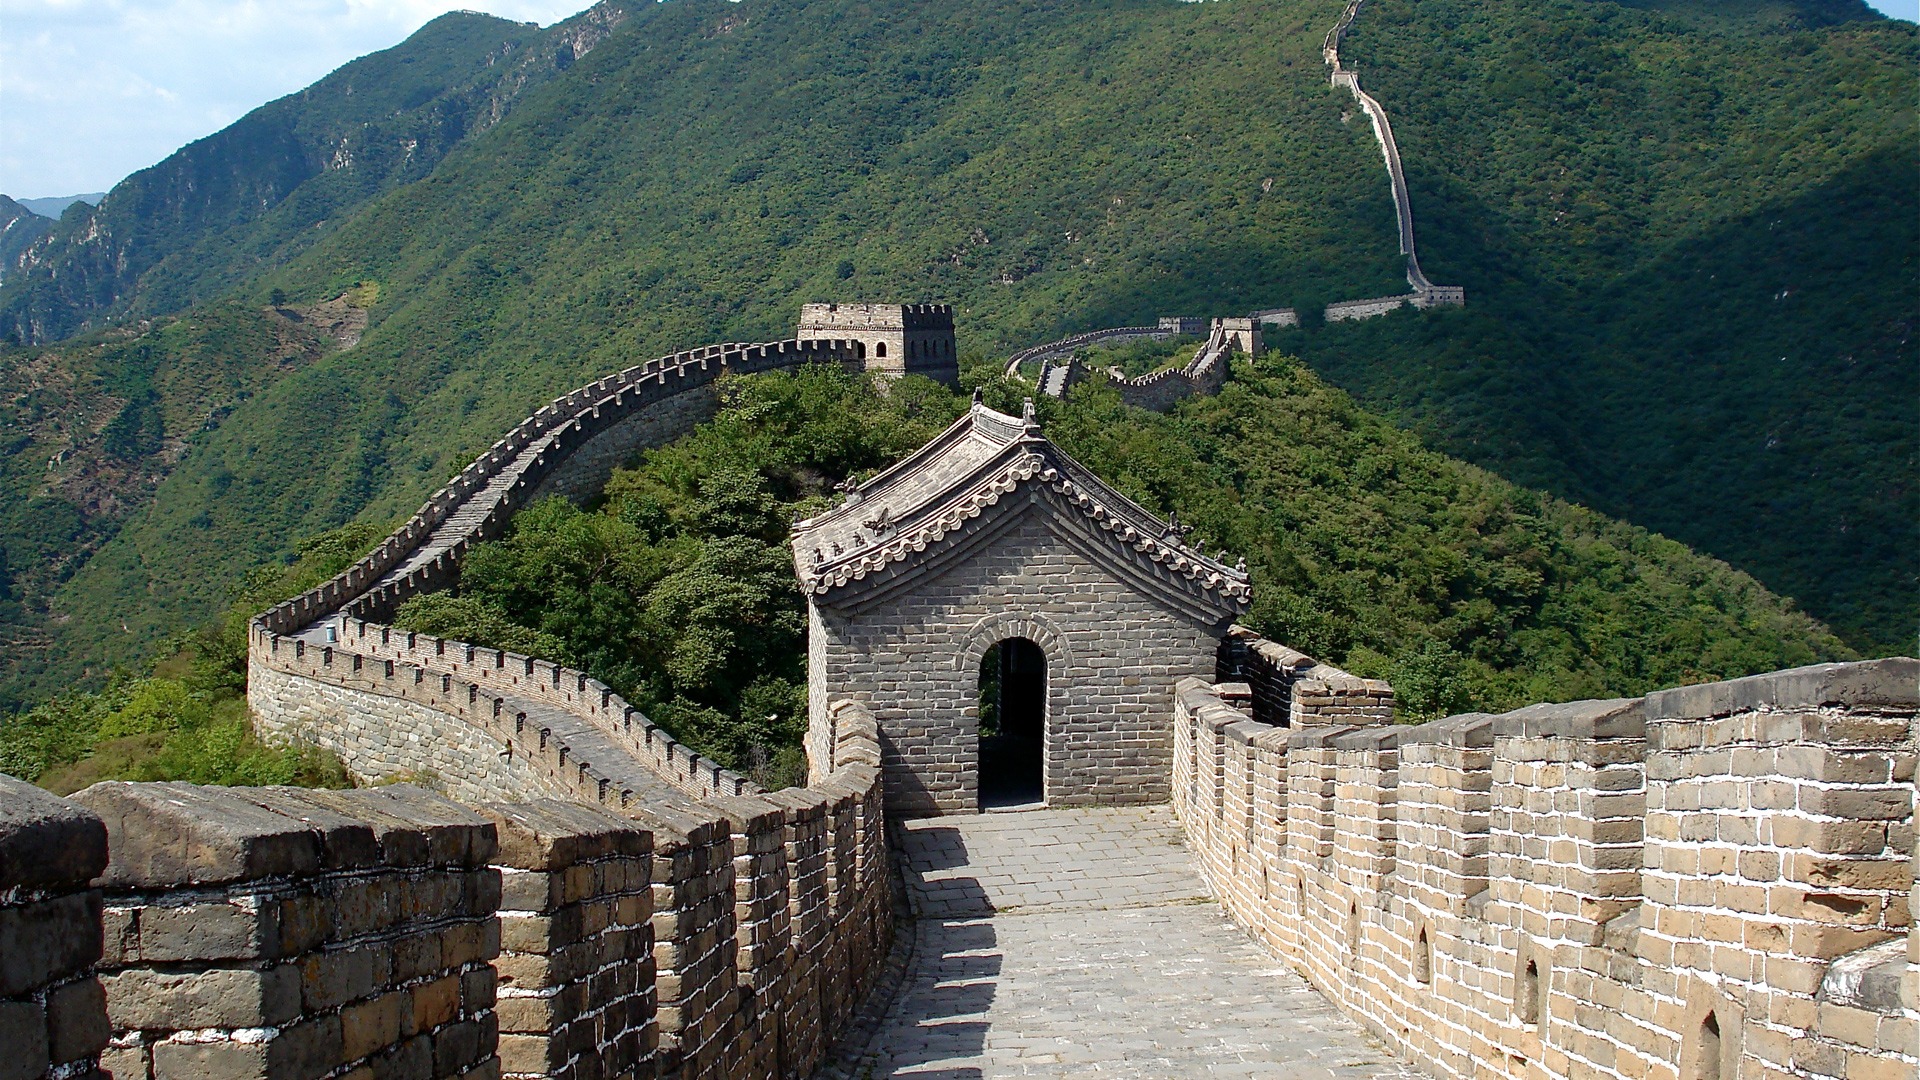 Man Made Great Wall Of China 1920x1080